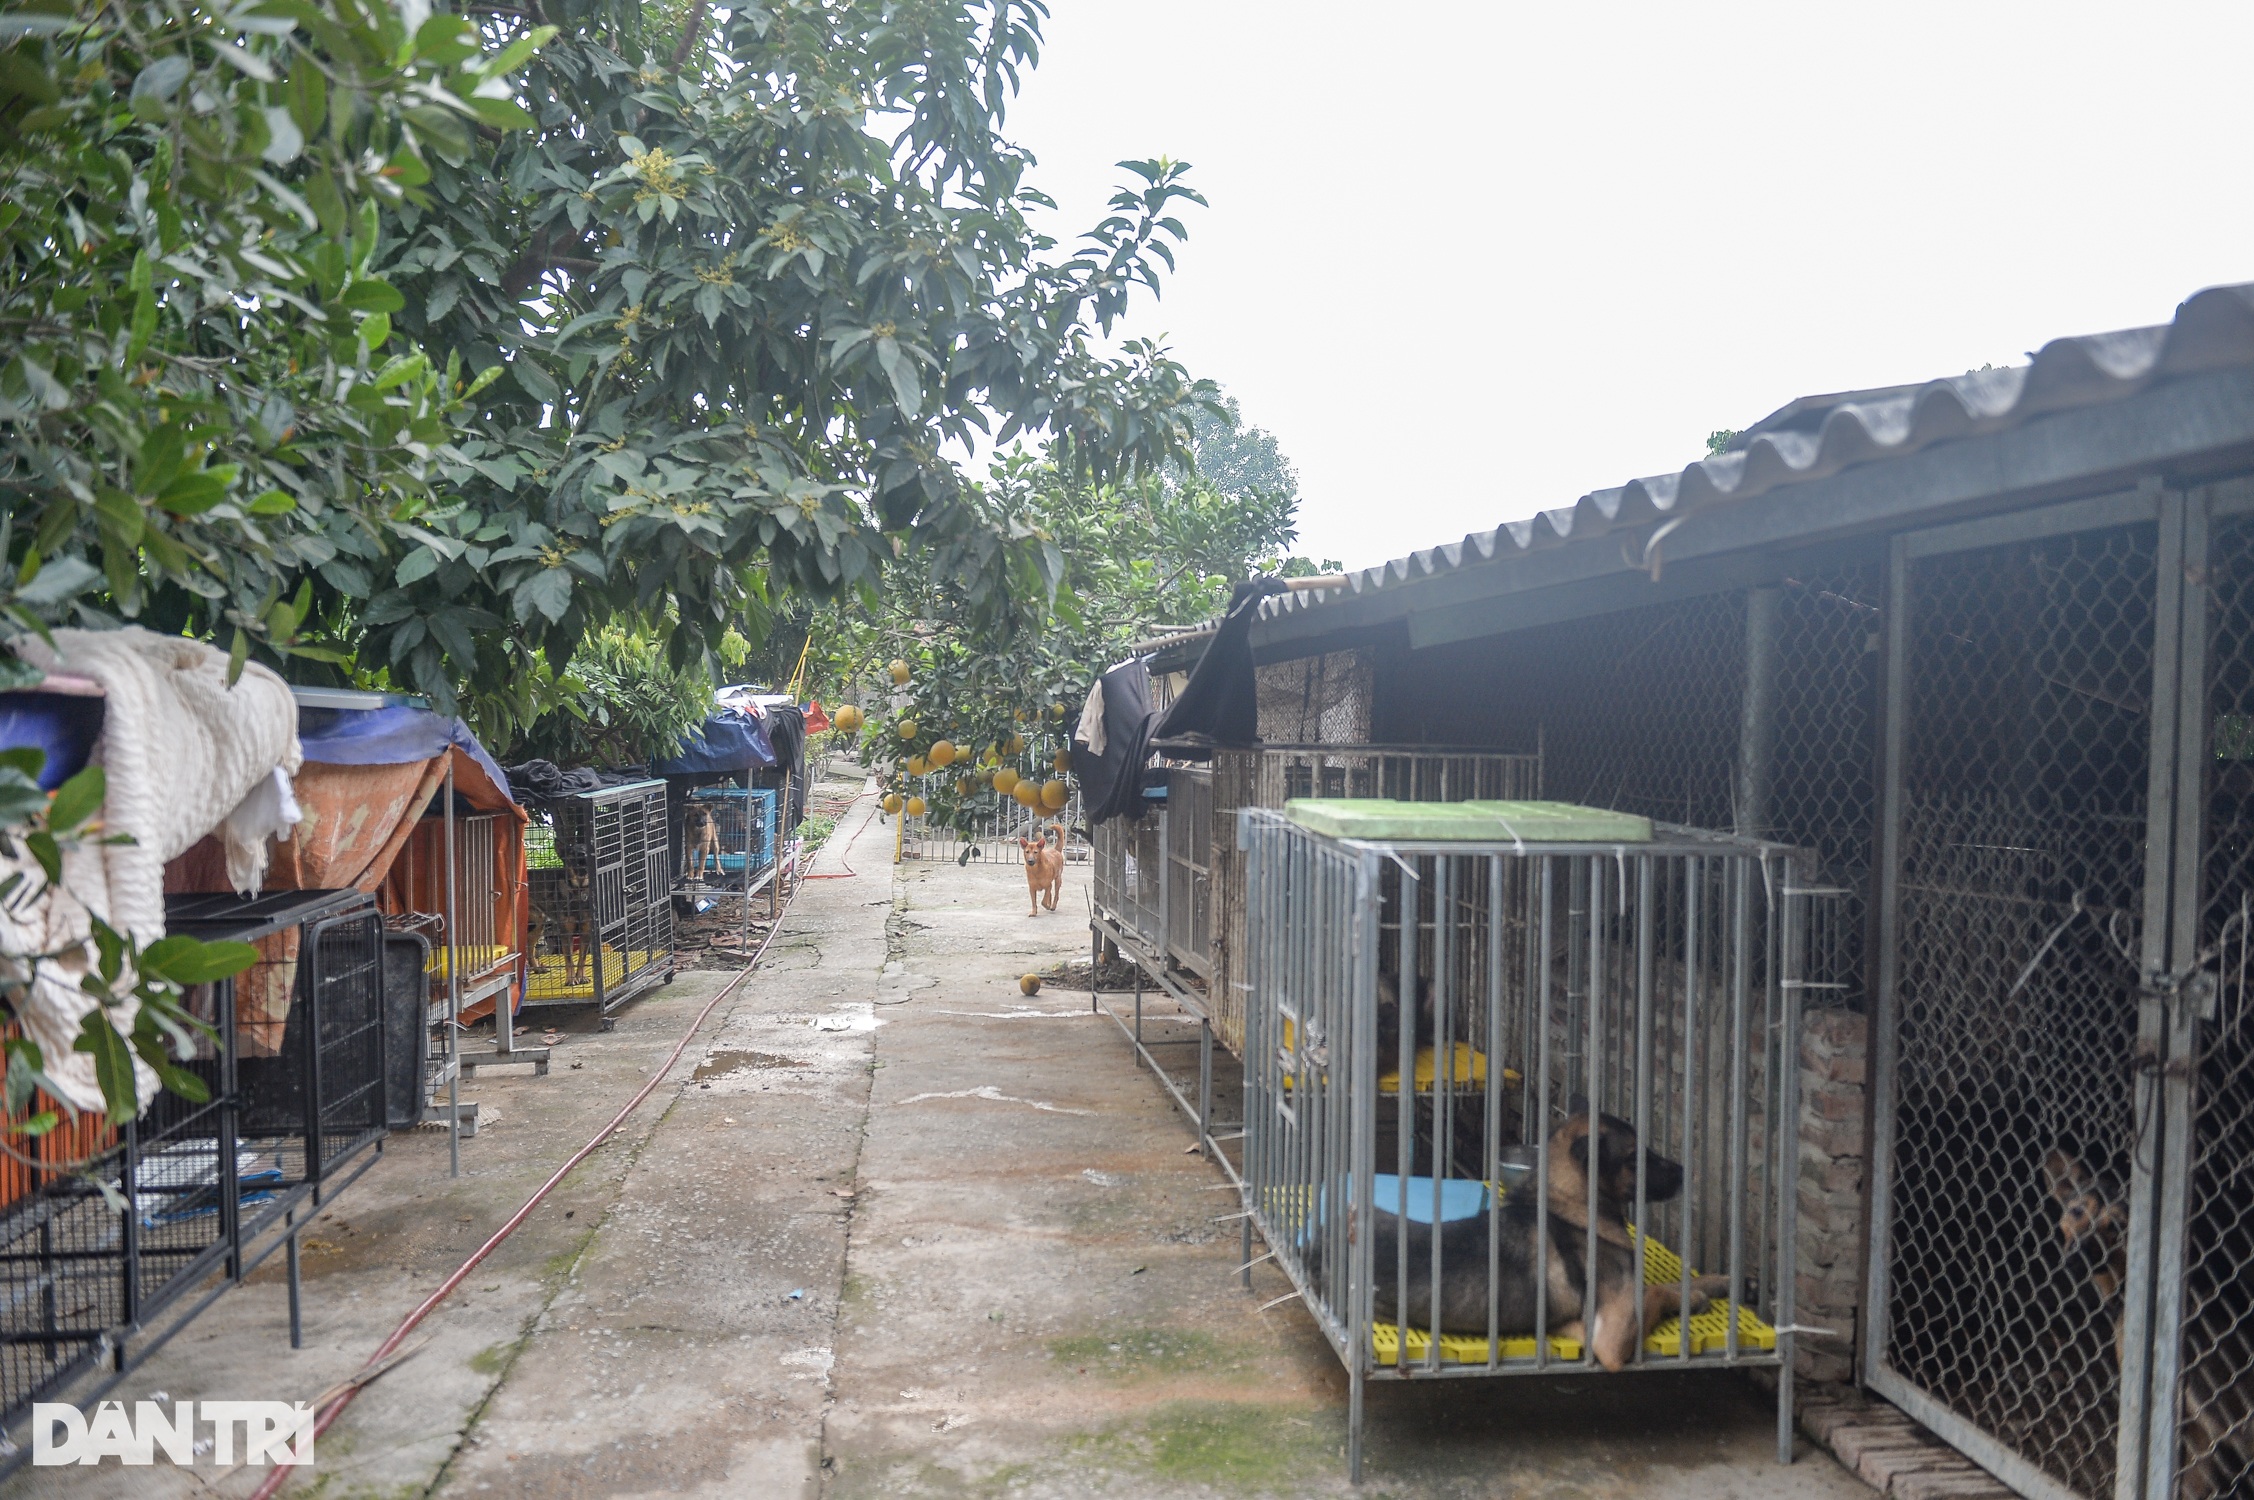 Nơi chăm sóc hàng trăm chú chó, mèo bị bỏ rơi ở Hà Nội - 1